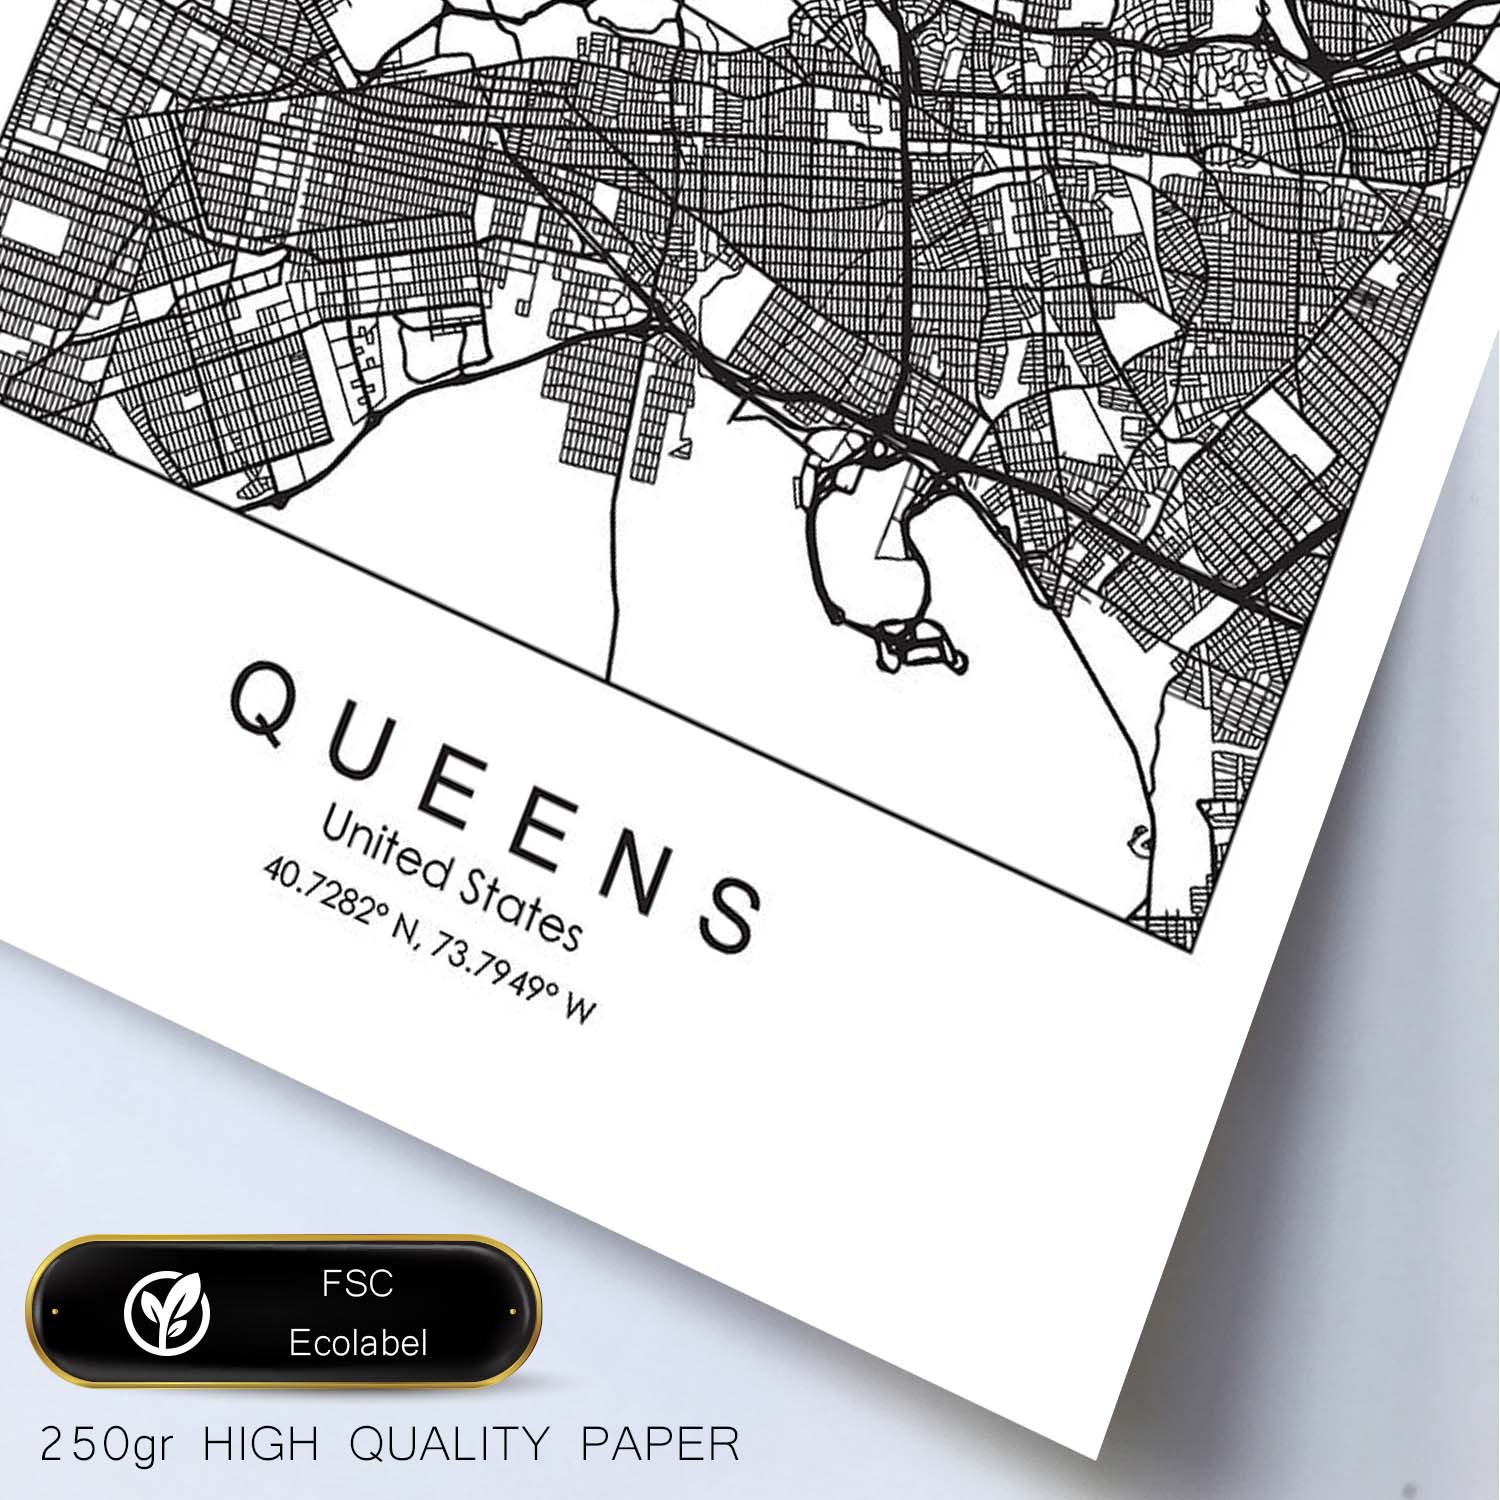 Poster con mapa de Queens. Lámina de Estados Unidos, con imágenes de mapas y carreteras-Artwork-Nacnic-Nacnic Estudio SL